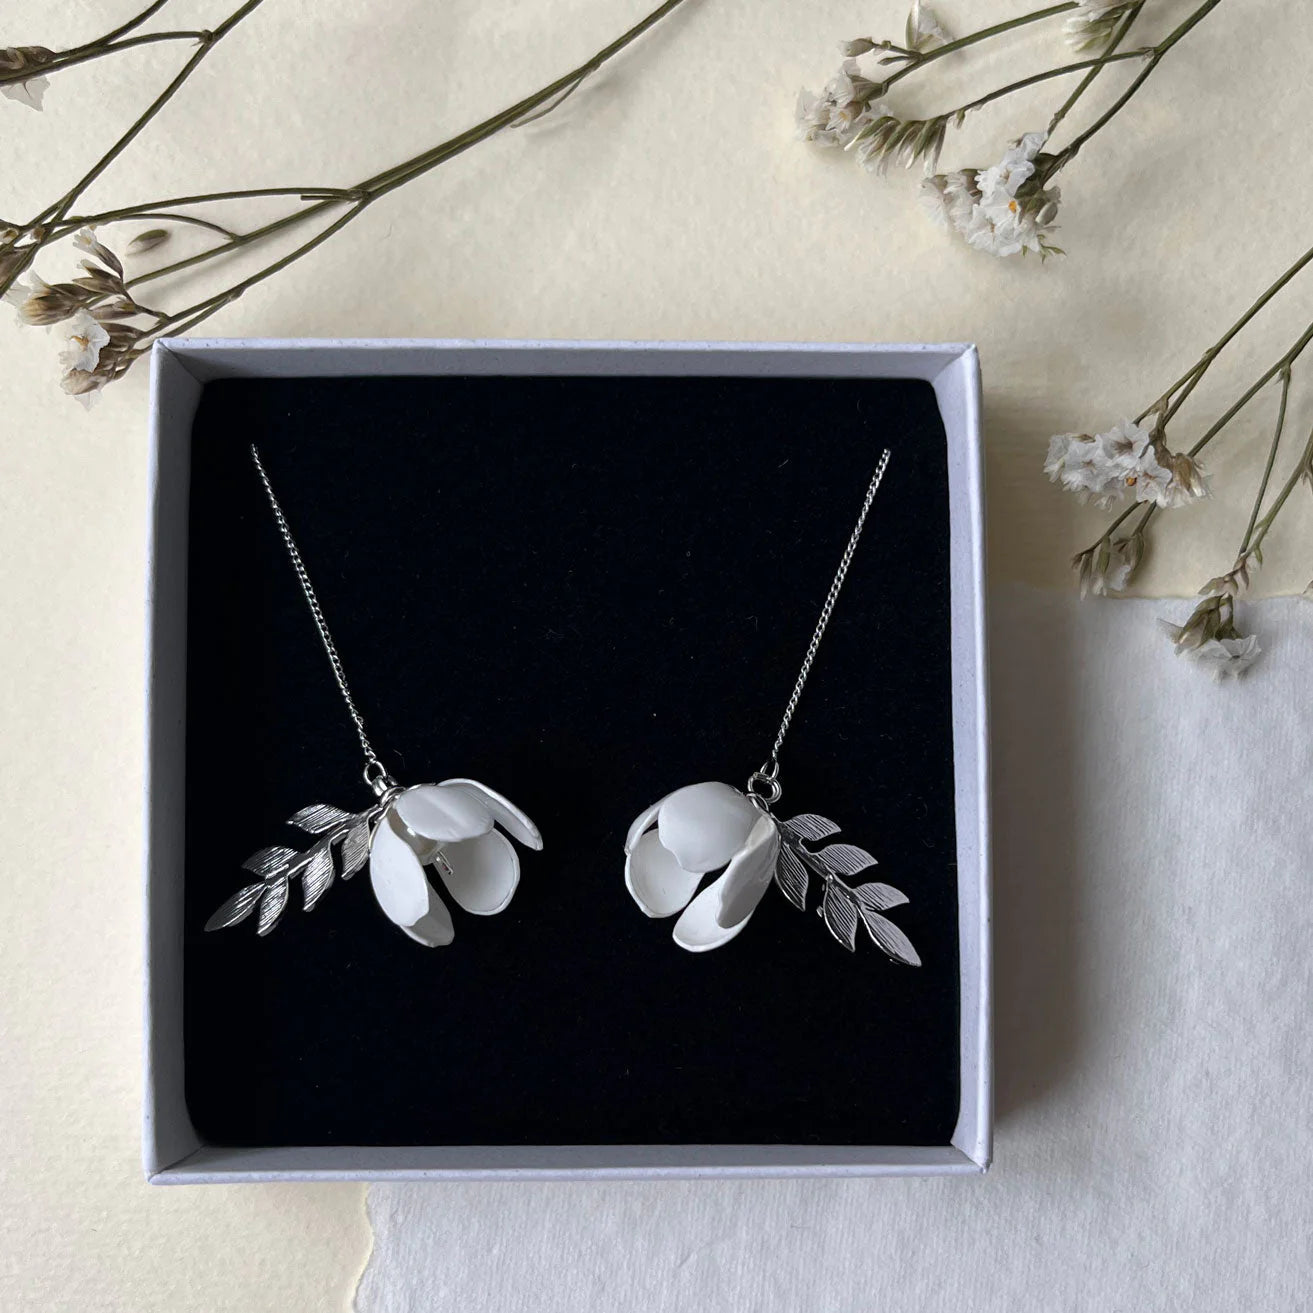 White flower adjustable earrings